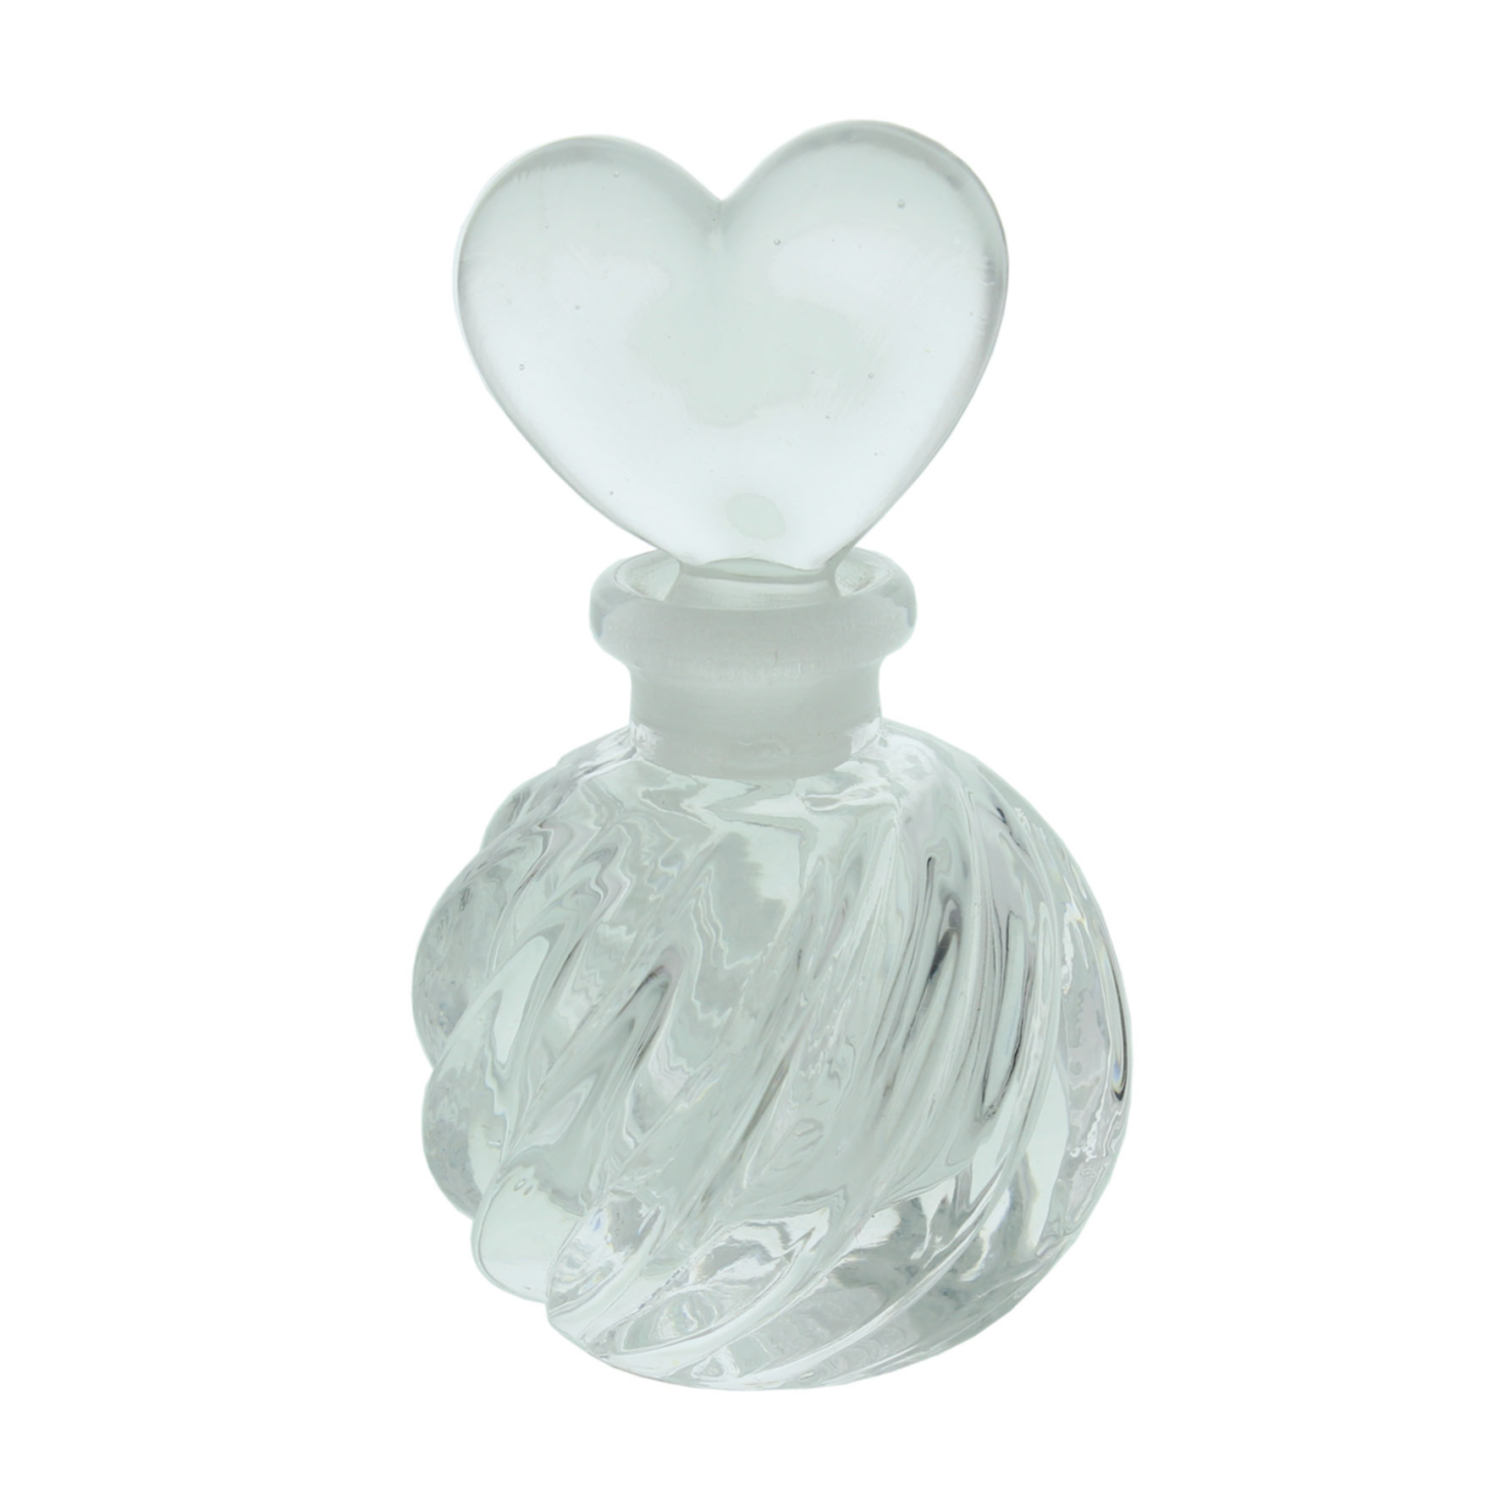 Der elegante Glas-Parfüm-Flacon mit Herz Verschluss